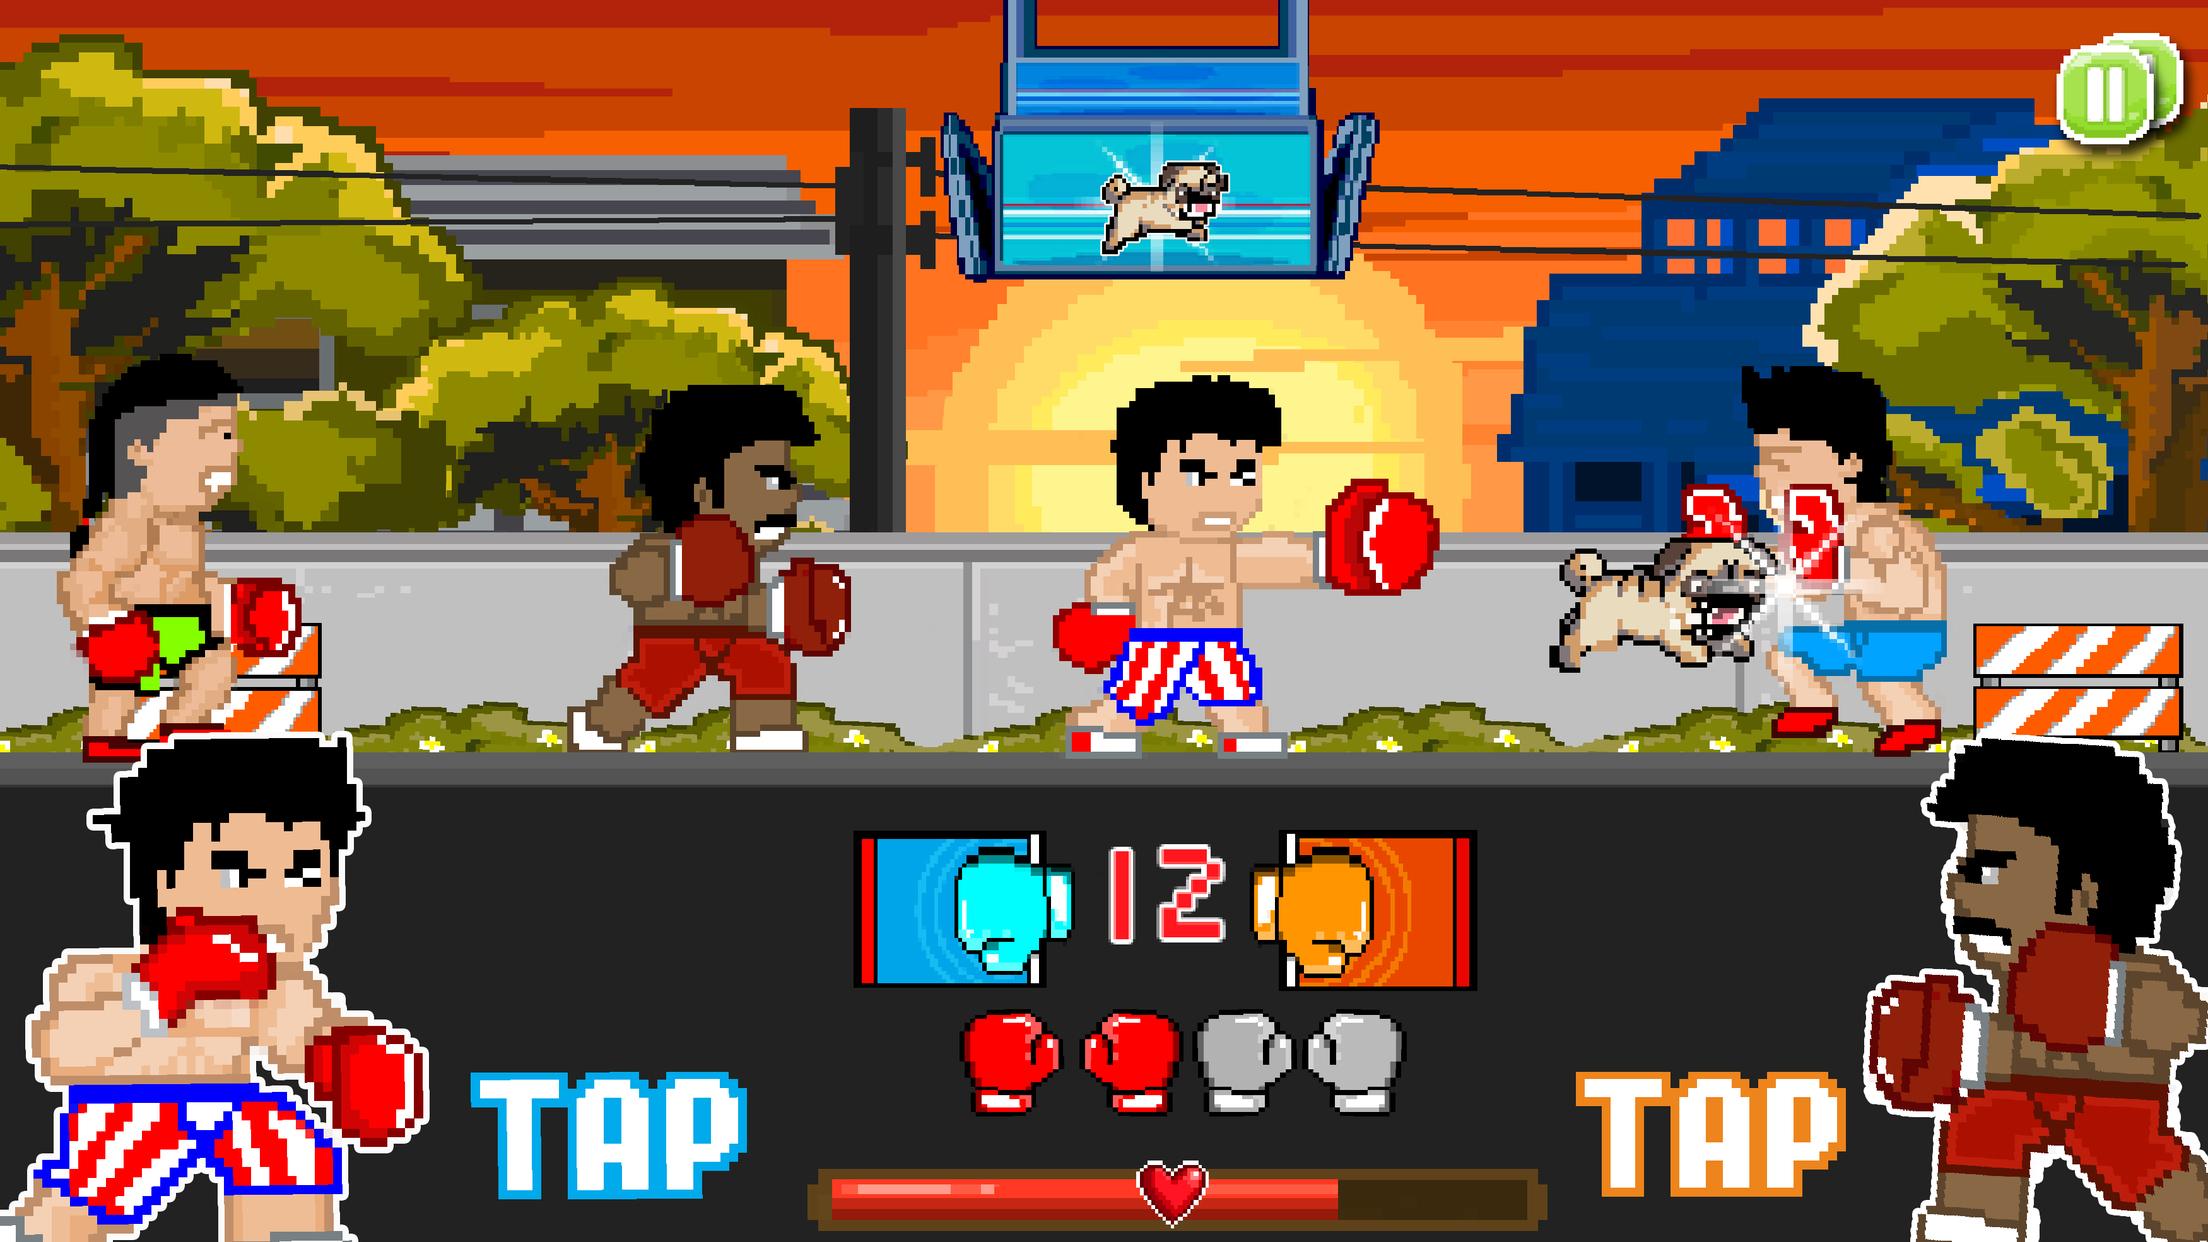 Игра бить стекла. Пиксельная игра про бокс. Игра супер бойцы. Игра про боксера Punch. 8 Битная игра про боксера.